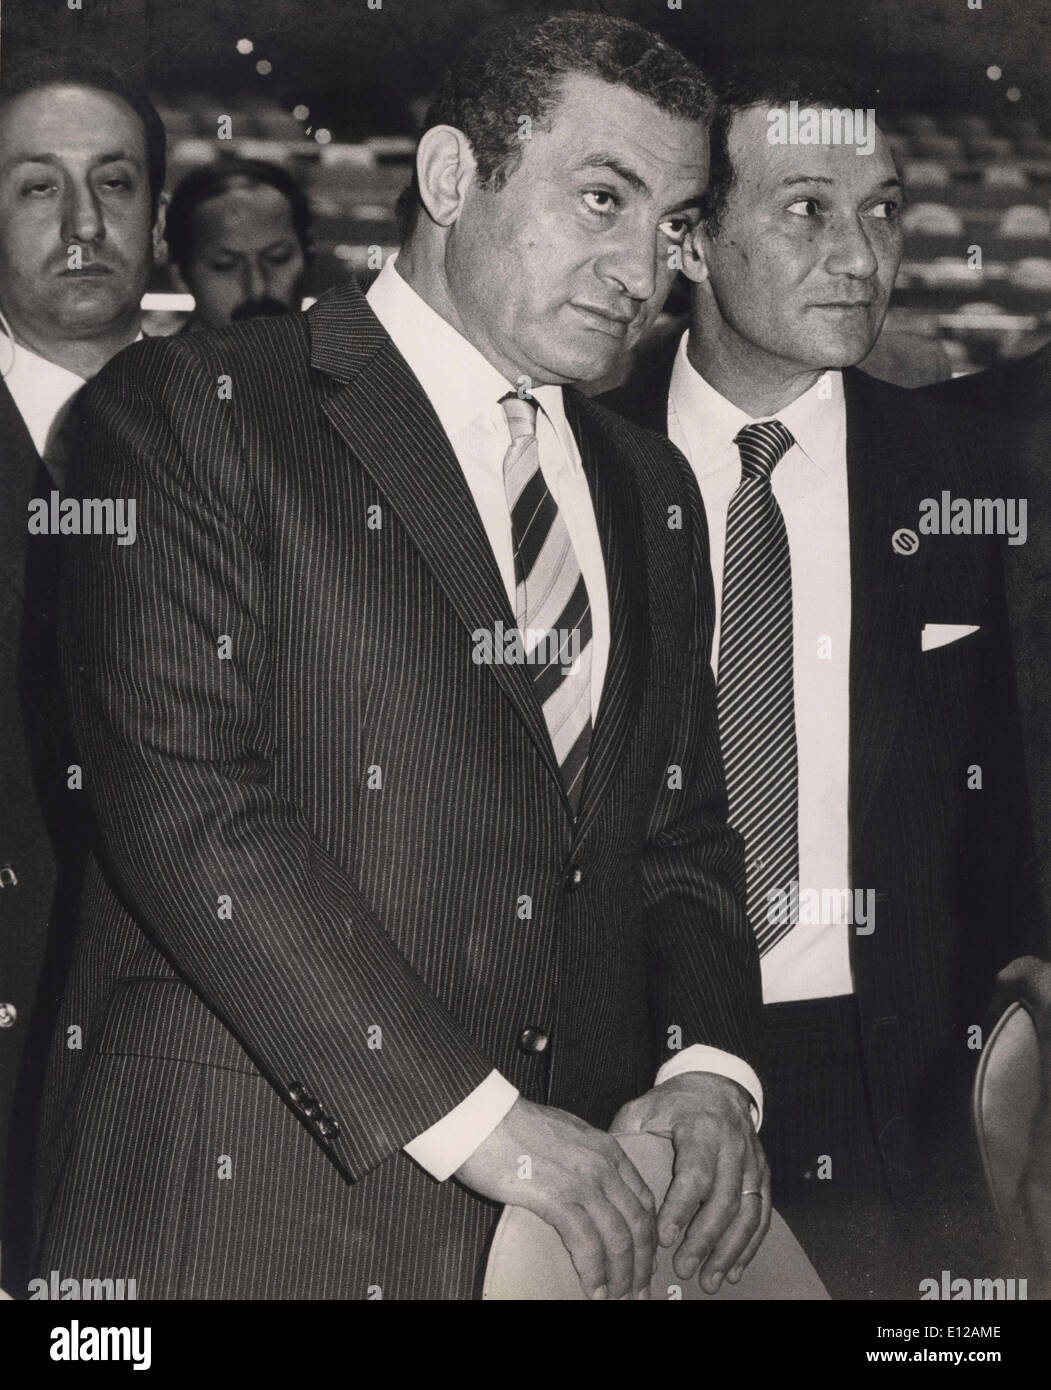 Giugno 19, 2012 - Cairo, Egitto - una garanzia ufficiale dice dell'Egitto leader spodestato Hosni Mubarak è stato messo a sostegno della vita dopo il suo cuore arrestato dopo aver subito un colpo quando è arrivato in ospedale dal carcere. In precedenza, dell'Egitto agenzia ufficiale, ha detto che era stato "clinicamente morto". Fonti più tardi detto Mubarak è stata mantenuta viva. Il presidente Mubarak ha dichiarato in Egitto per tre decenni fino a quando rovesciato da una rivoluzione nella ''Primavera araba' nell' ultimo anno. Nella foto: Gennaio 29, 1983 Hosni Mubarak a New York la visita alle Nazioni Unite. Foto Stock